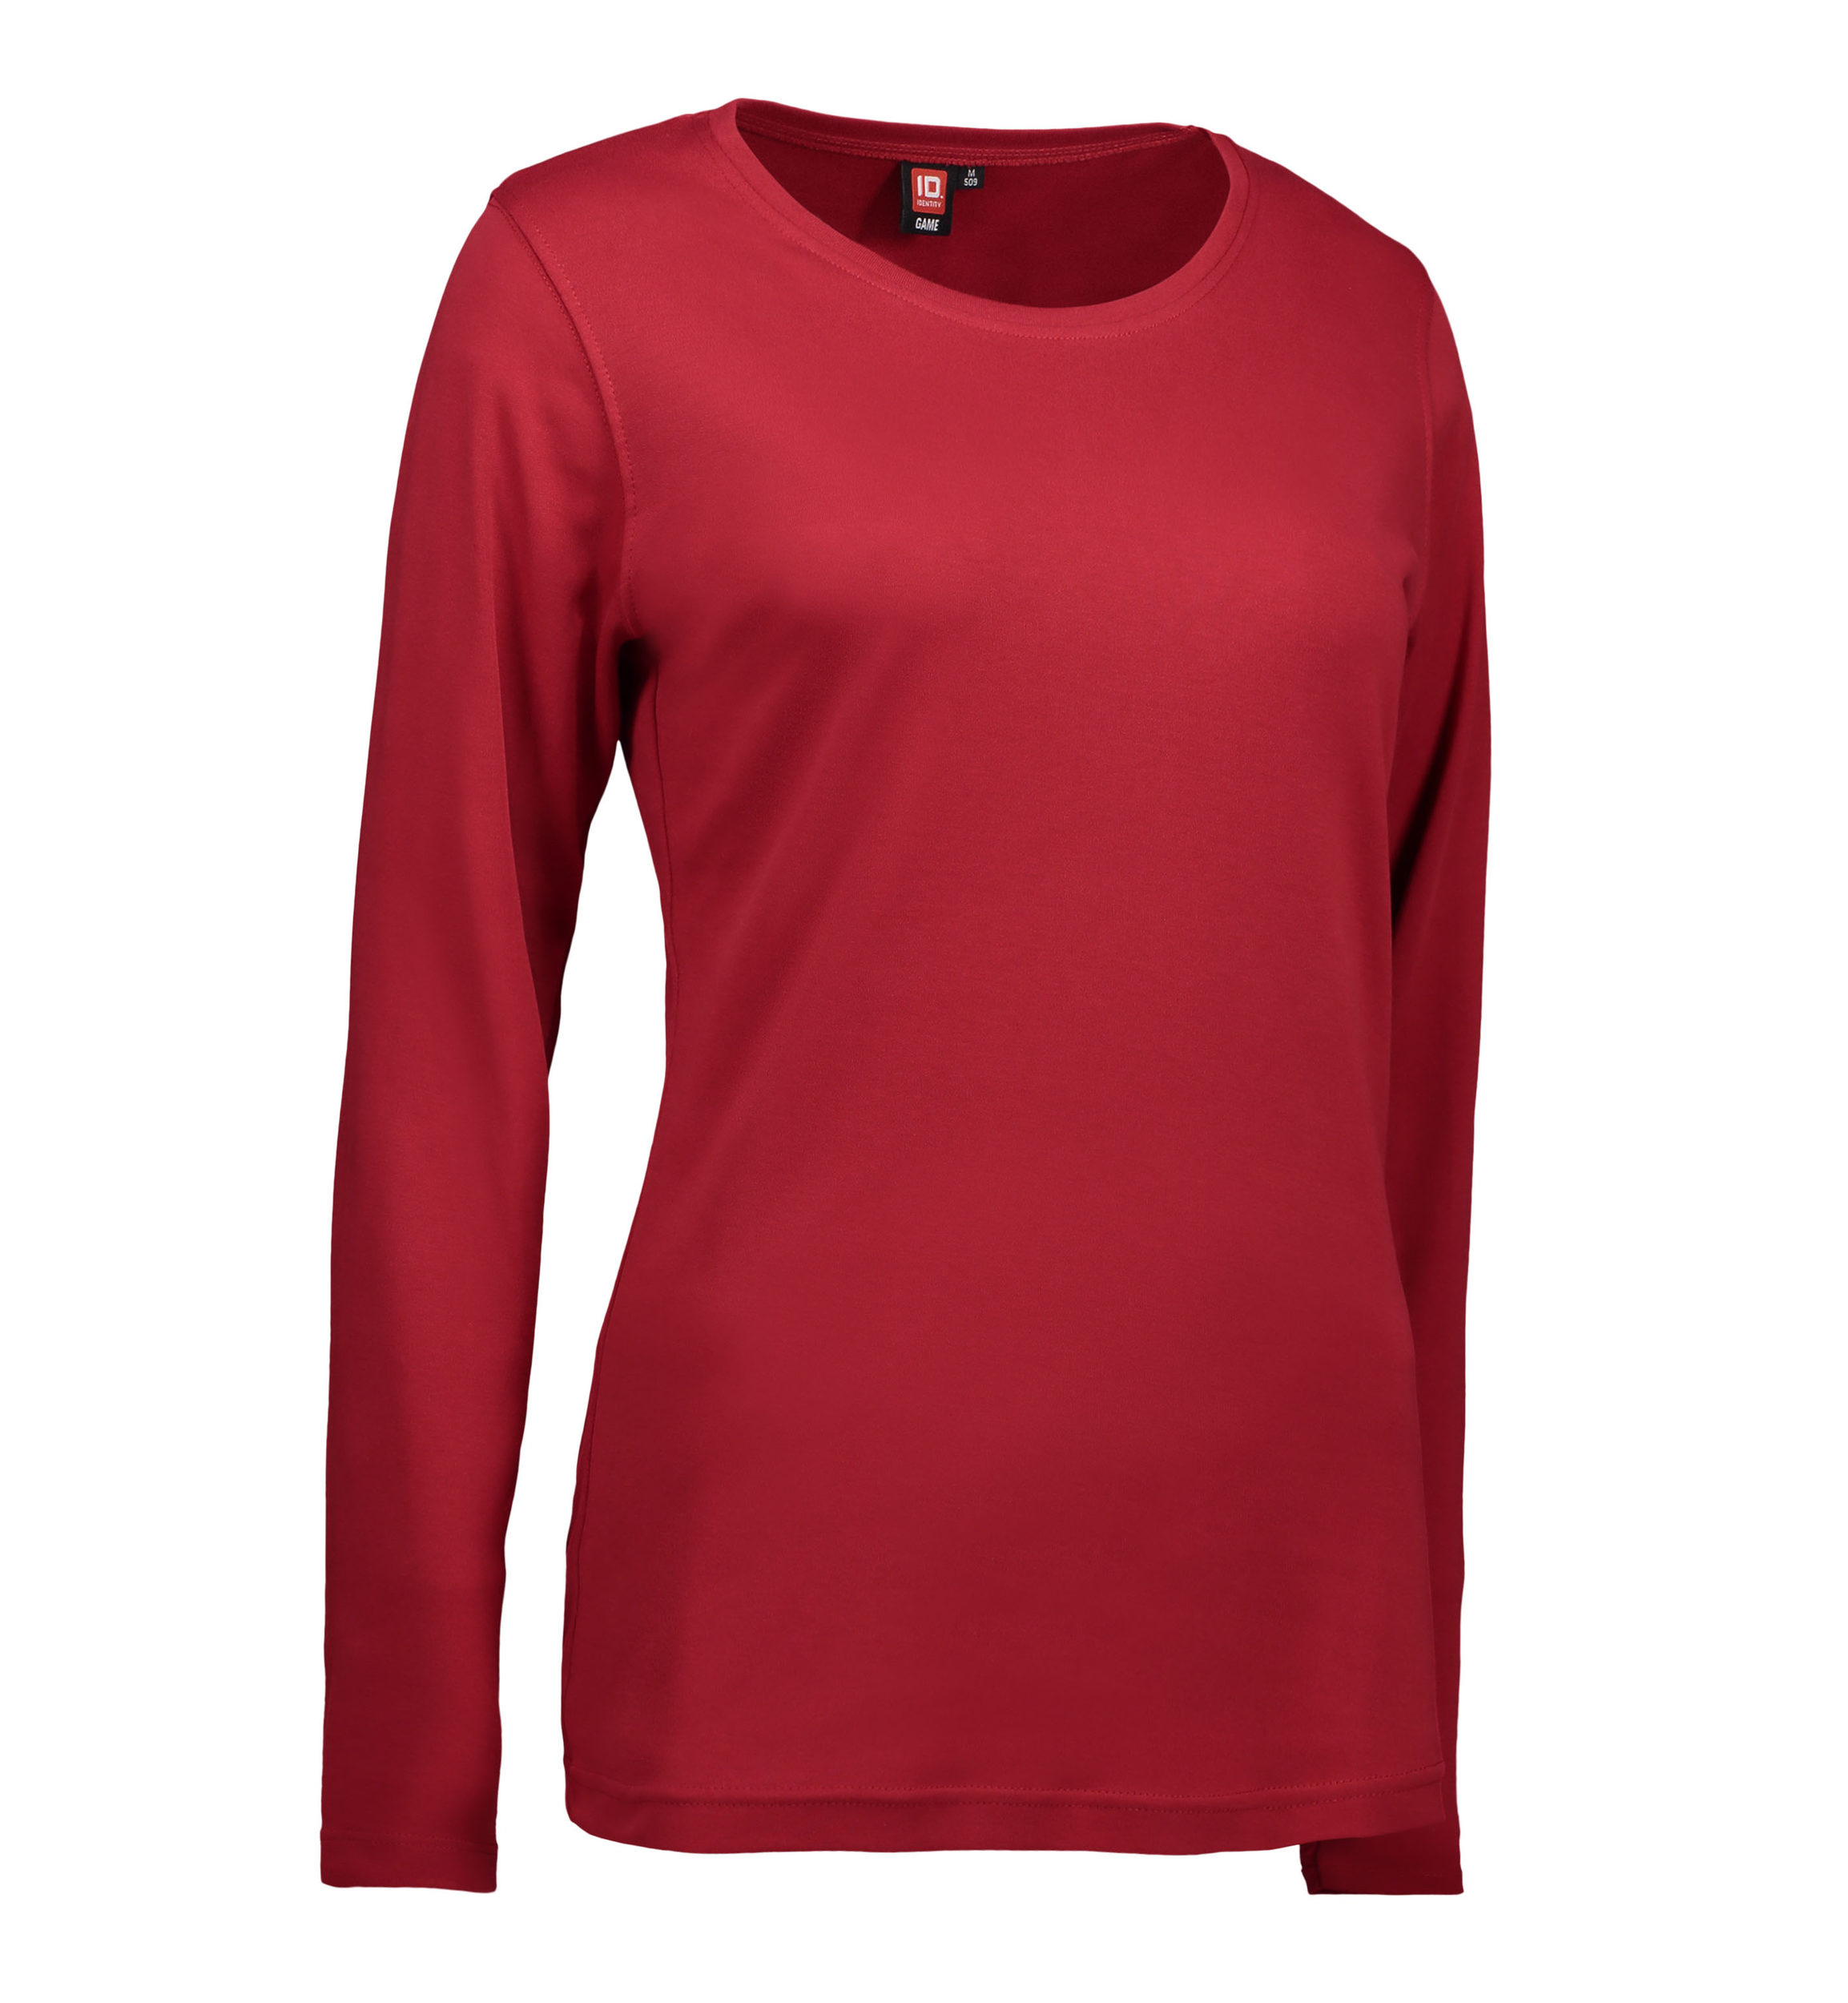 Billede af Langærmet dame t-shirt i rød - XL hos Sygeplejebutikken.dk